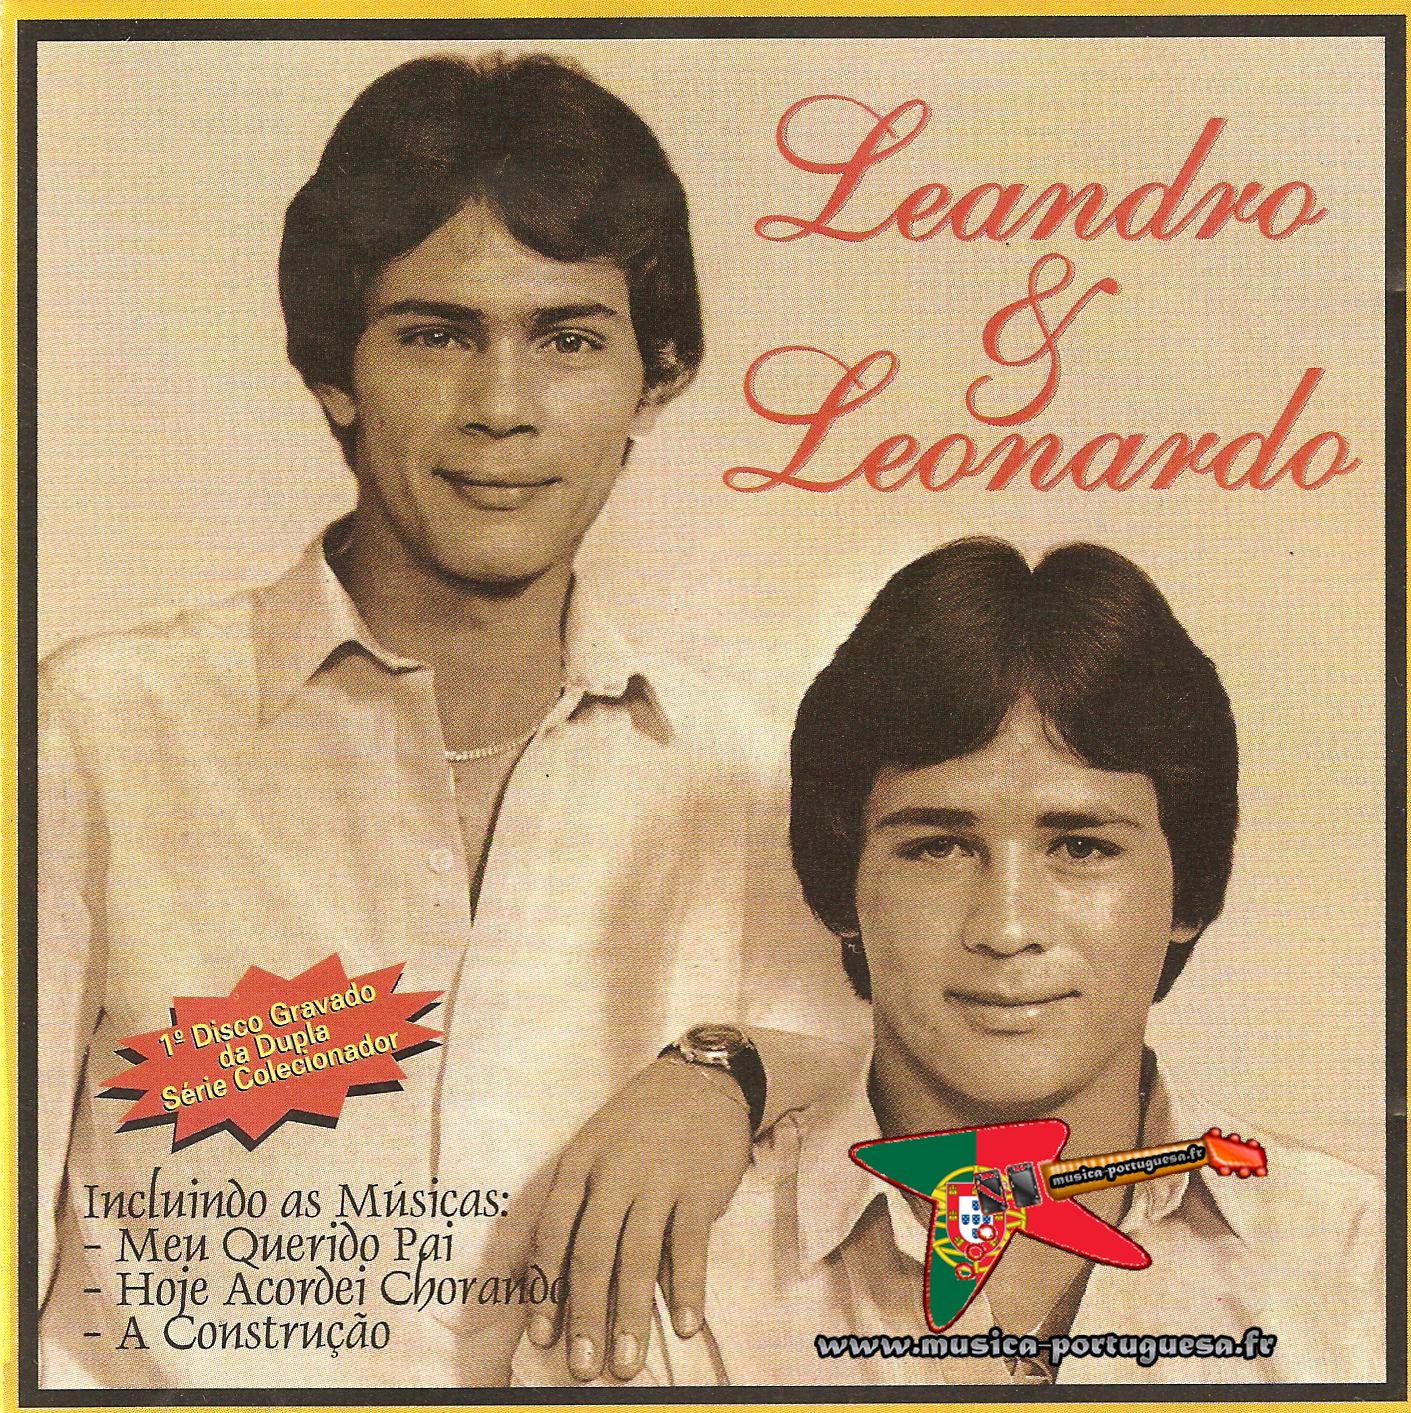 Leandro e Leonardo – A Construção (1985) | Musica-Portuguesa